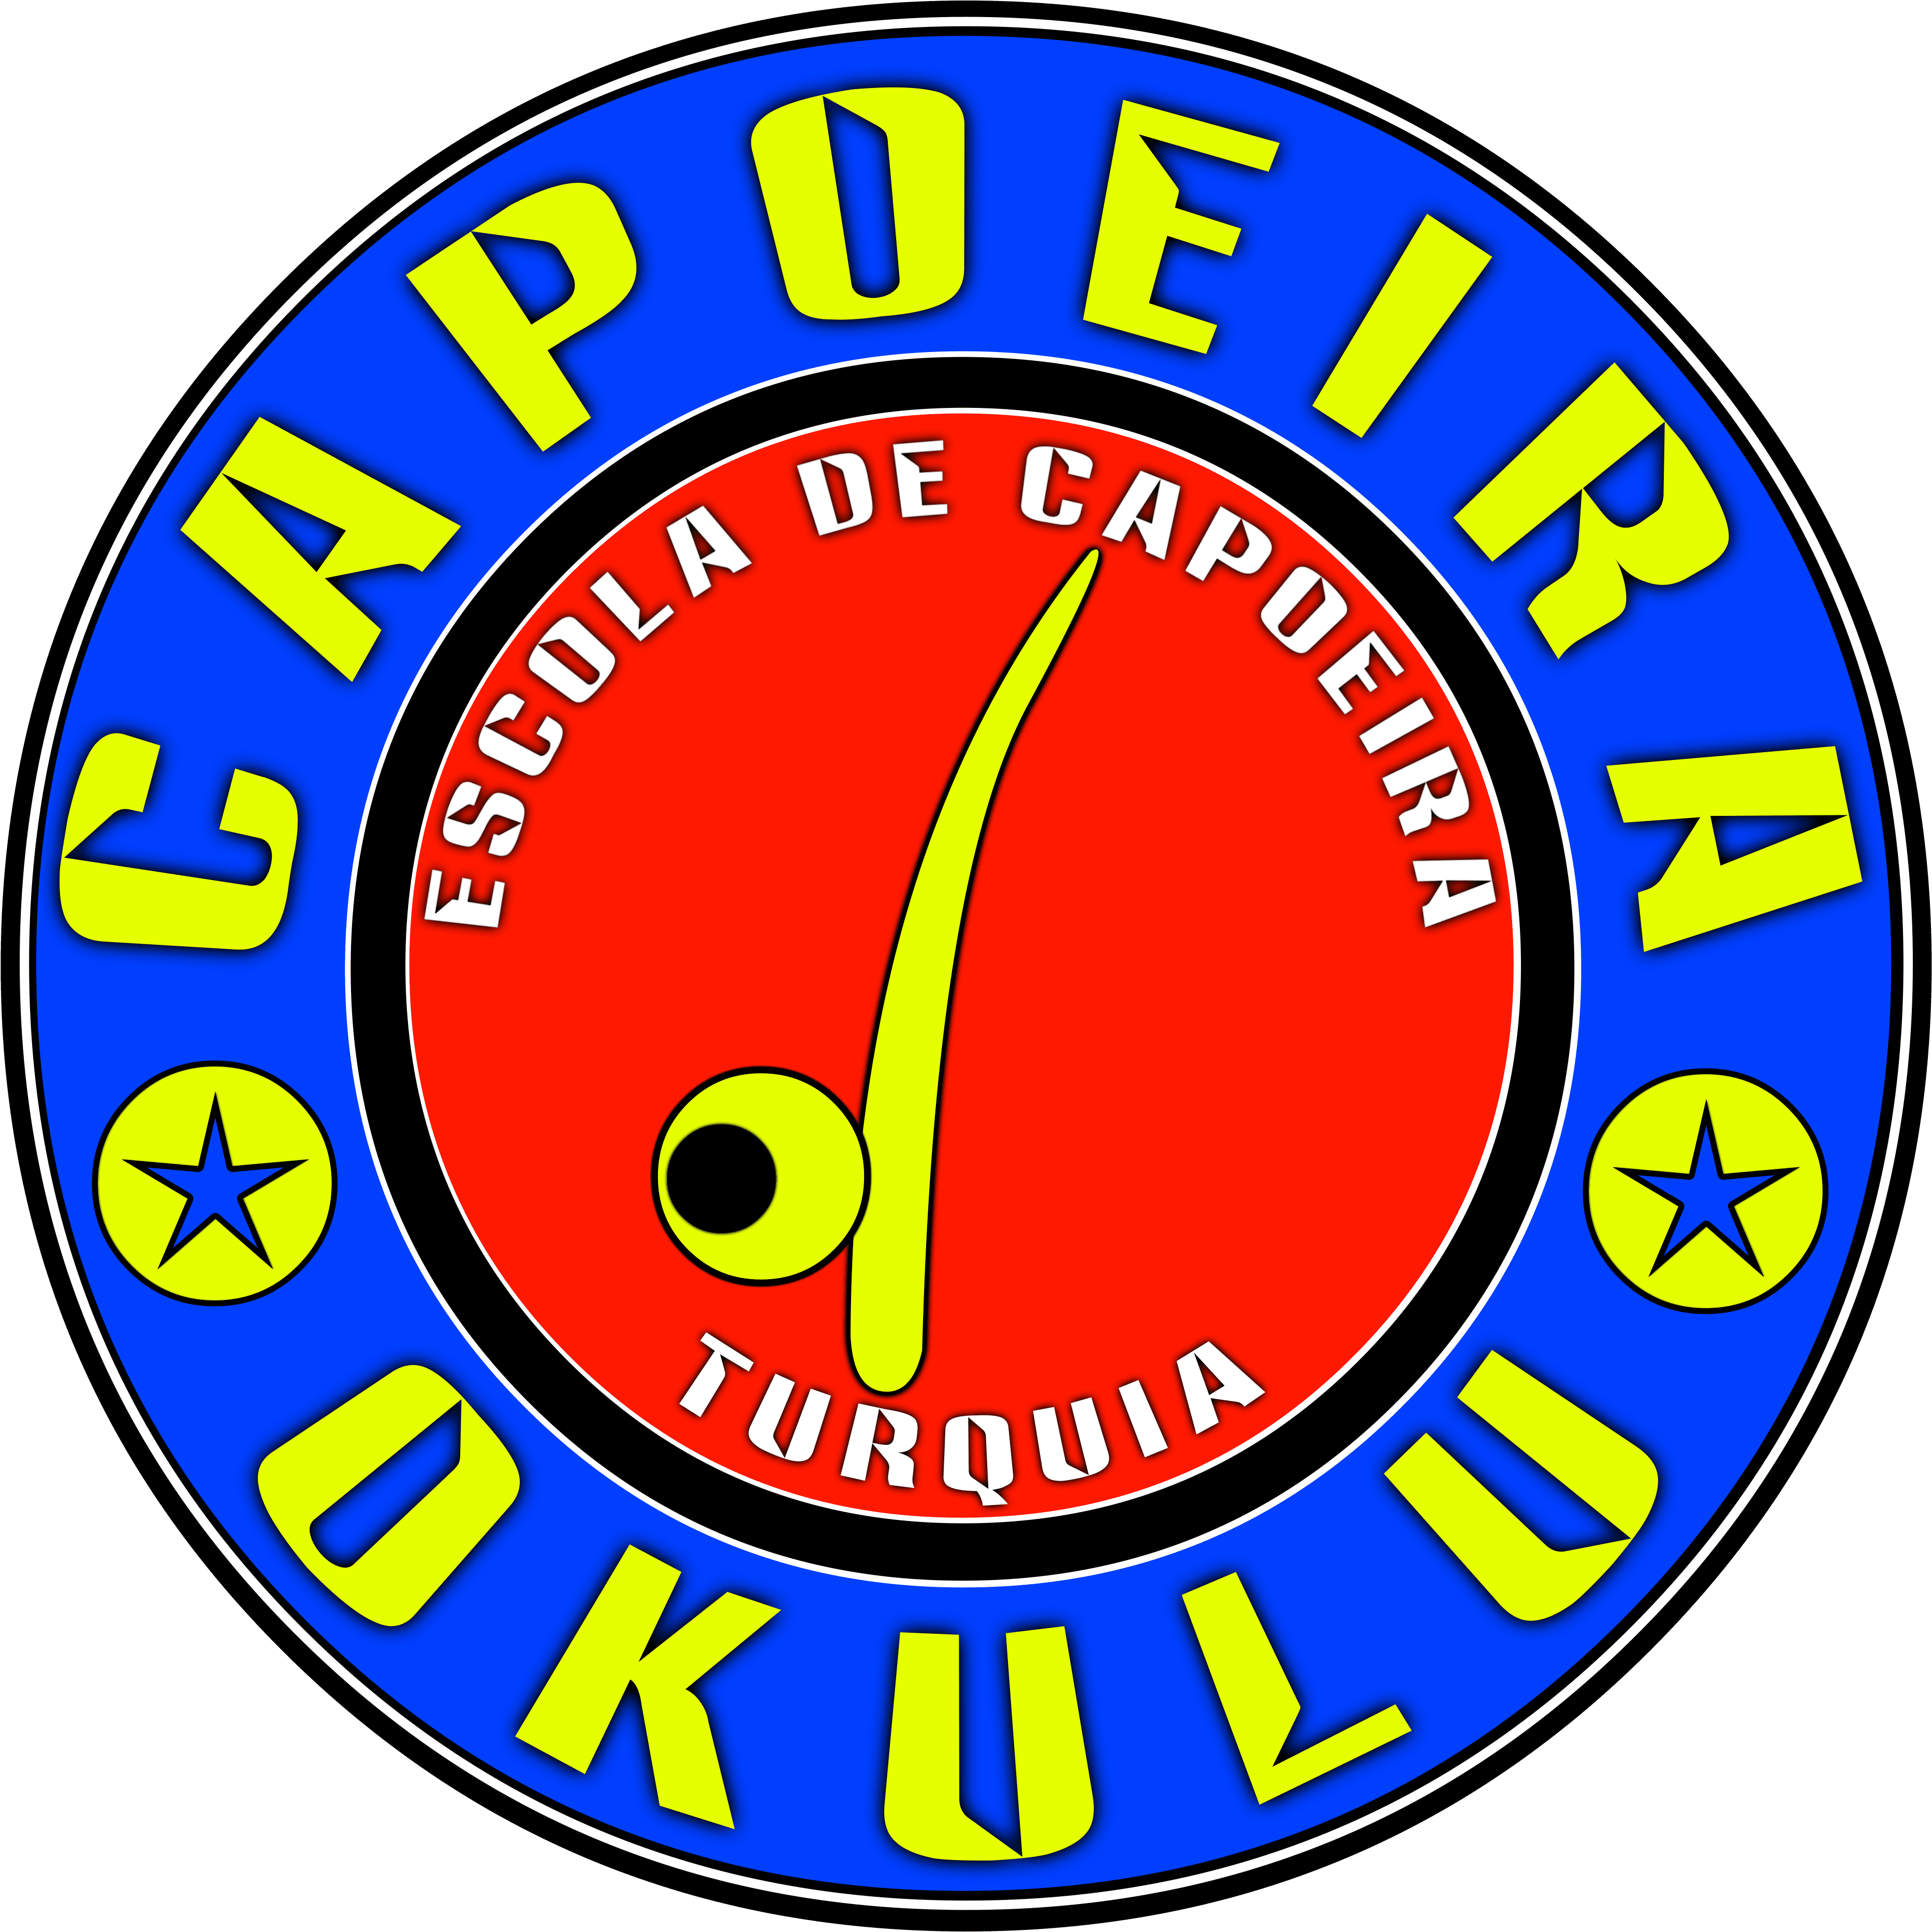 Türkiye’nin En Büyük Capoeira Sosyal Medya Hesabı Capoeira Okulu